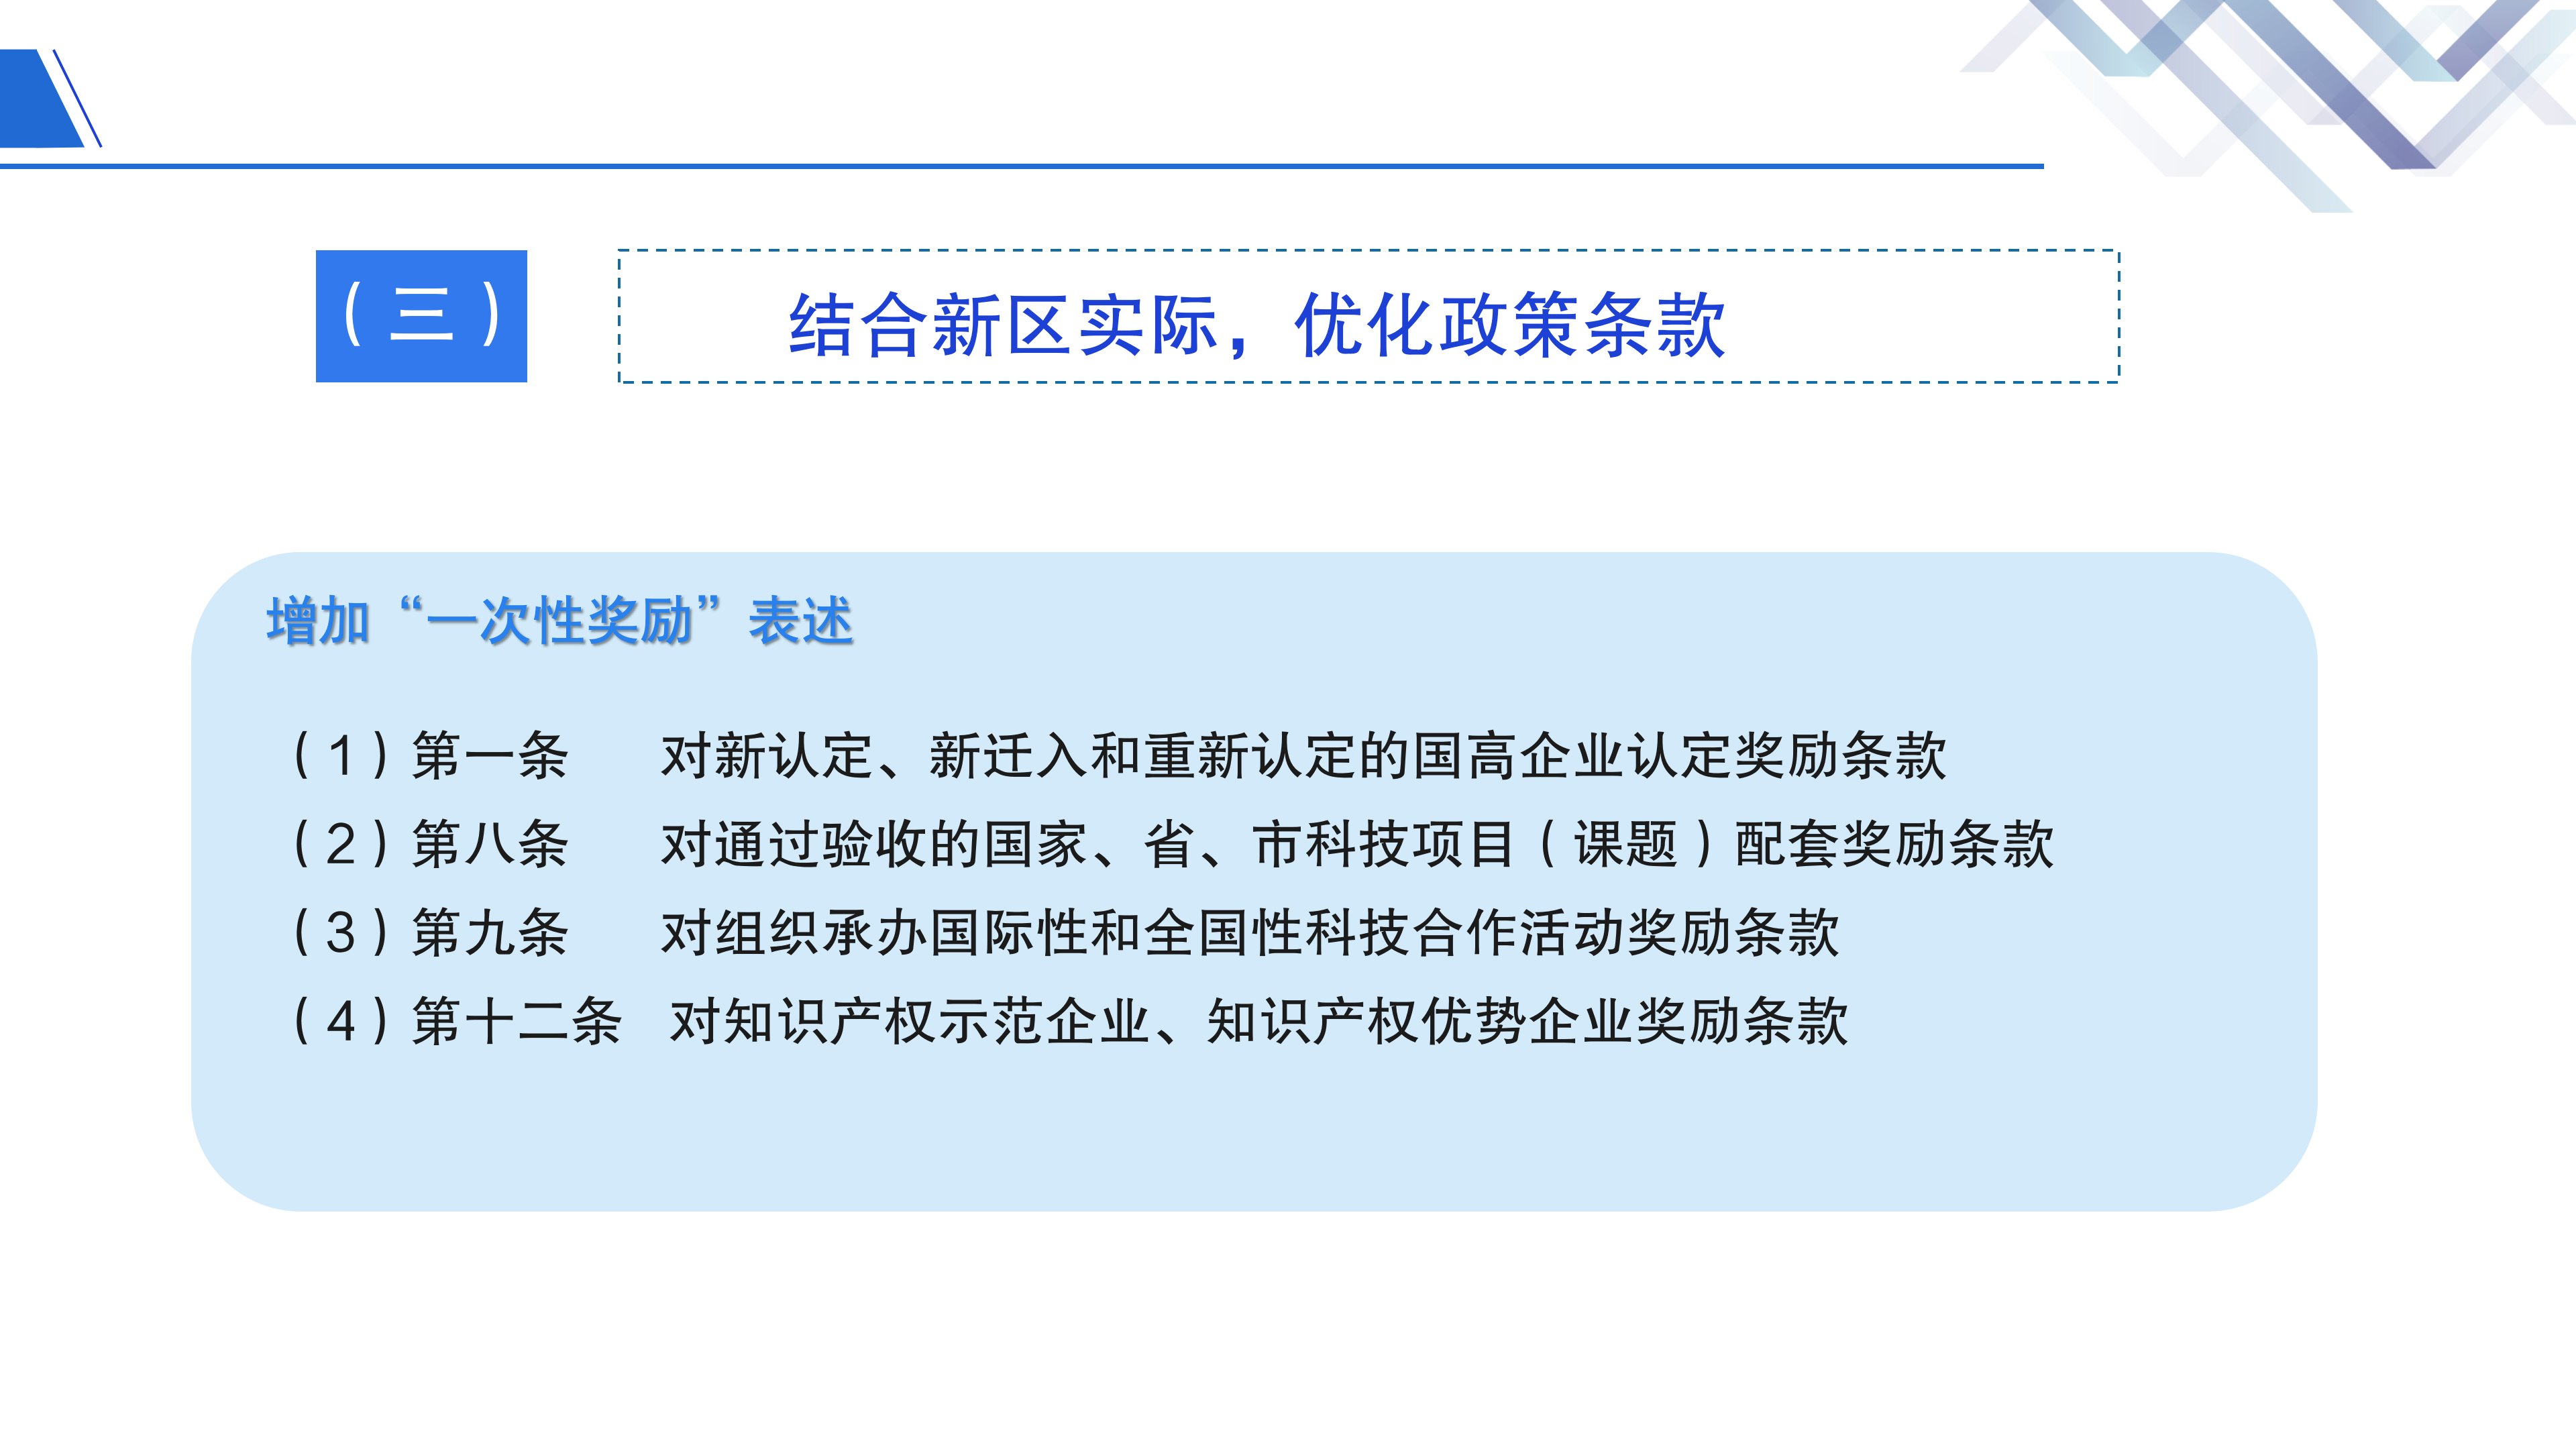 《深圳市大鹏新区关于加强科技研发促进技术创新的若干措施》政策解读_09.png